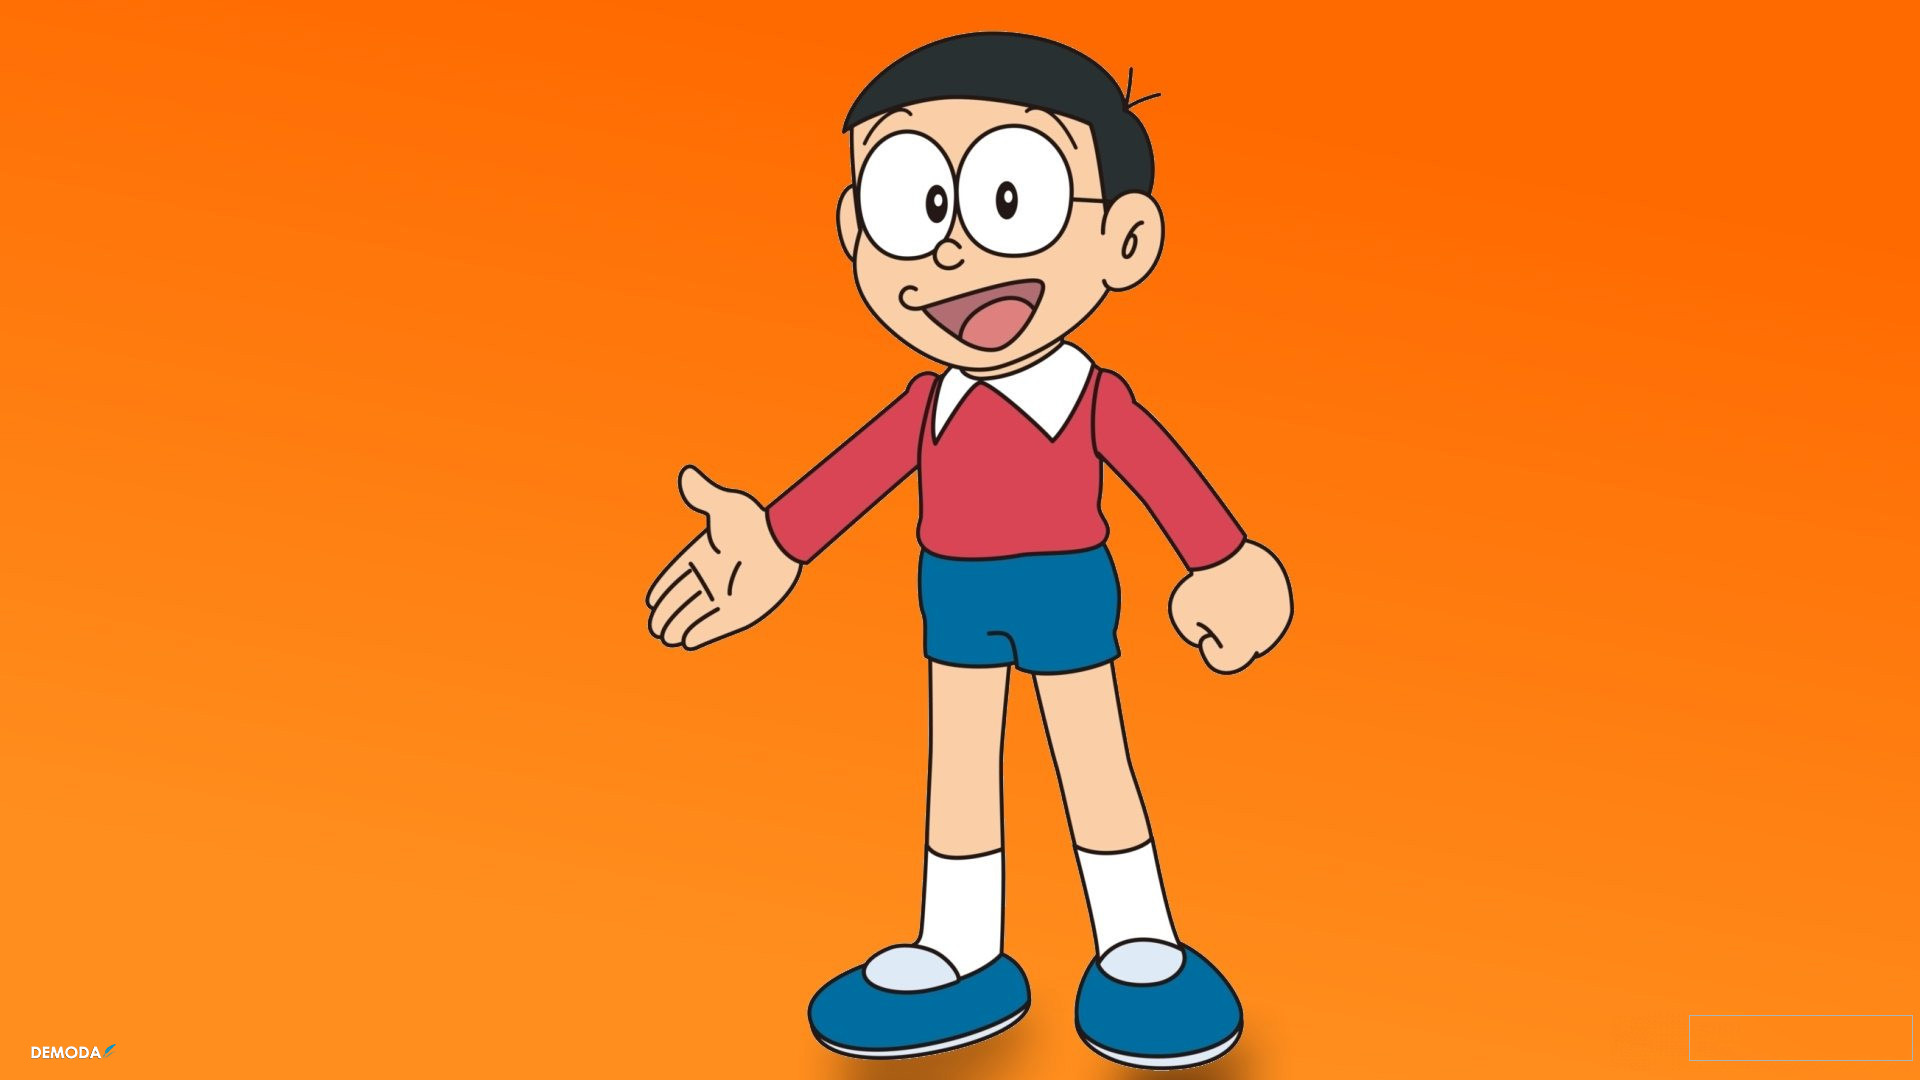 Ảnh Nobita Đẹp, Ấn Tượng, Sắc Nét Nhất Trong Doremon